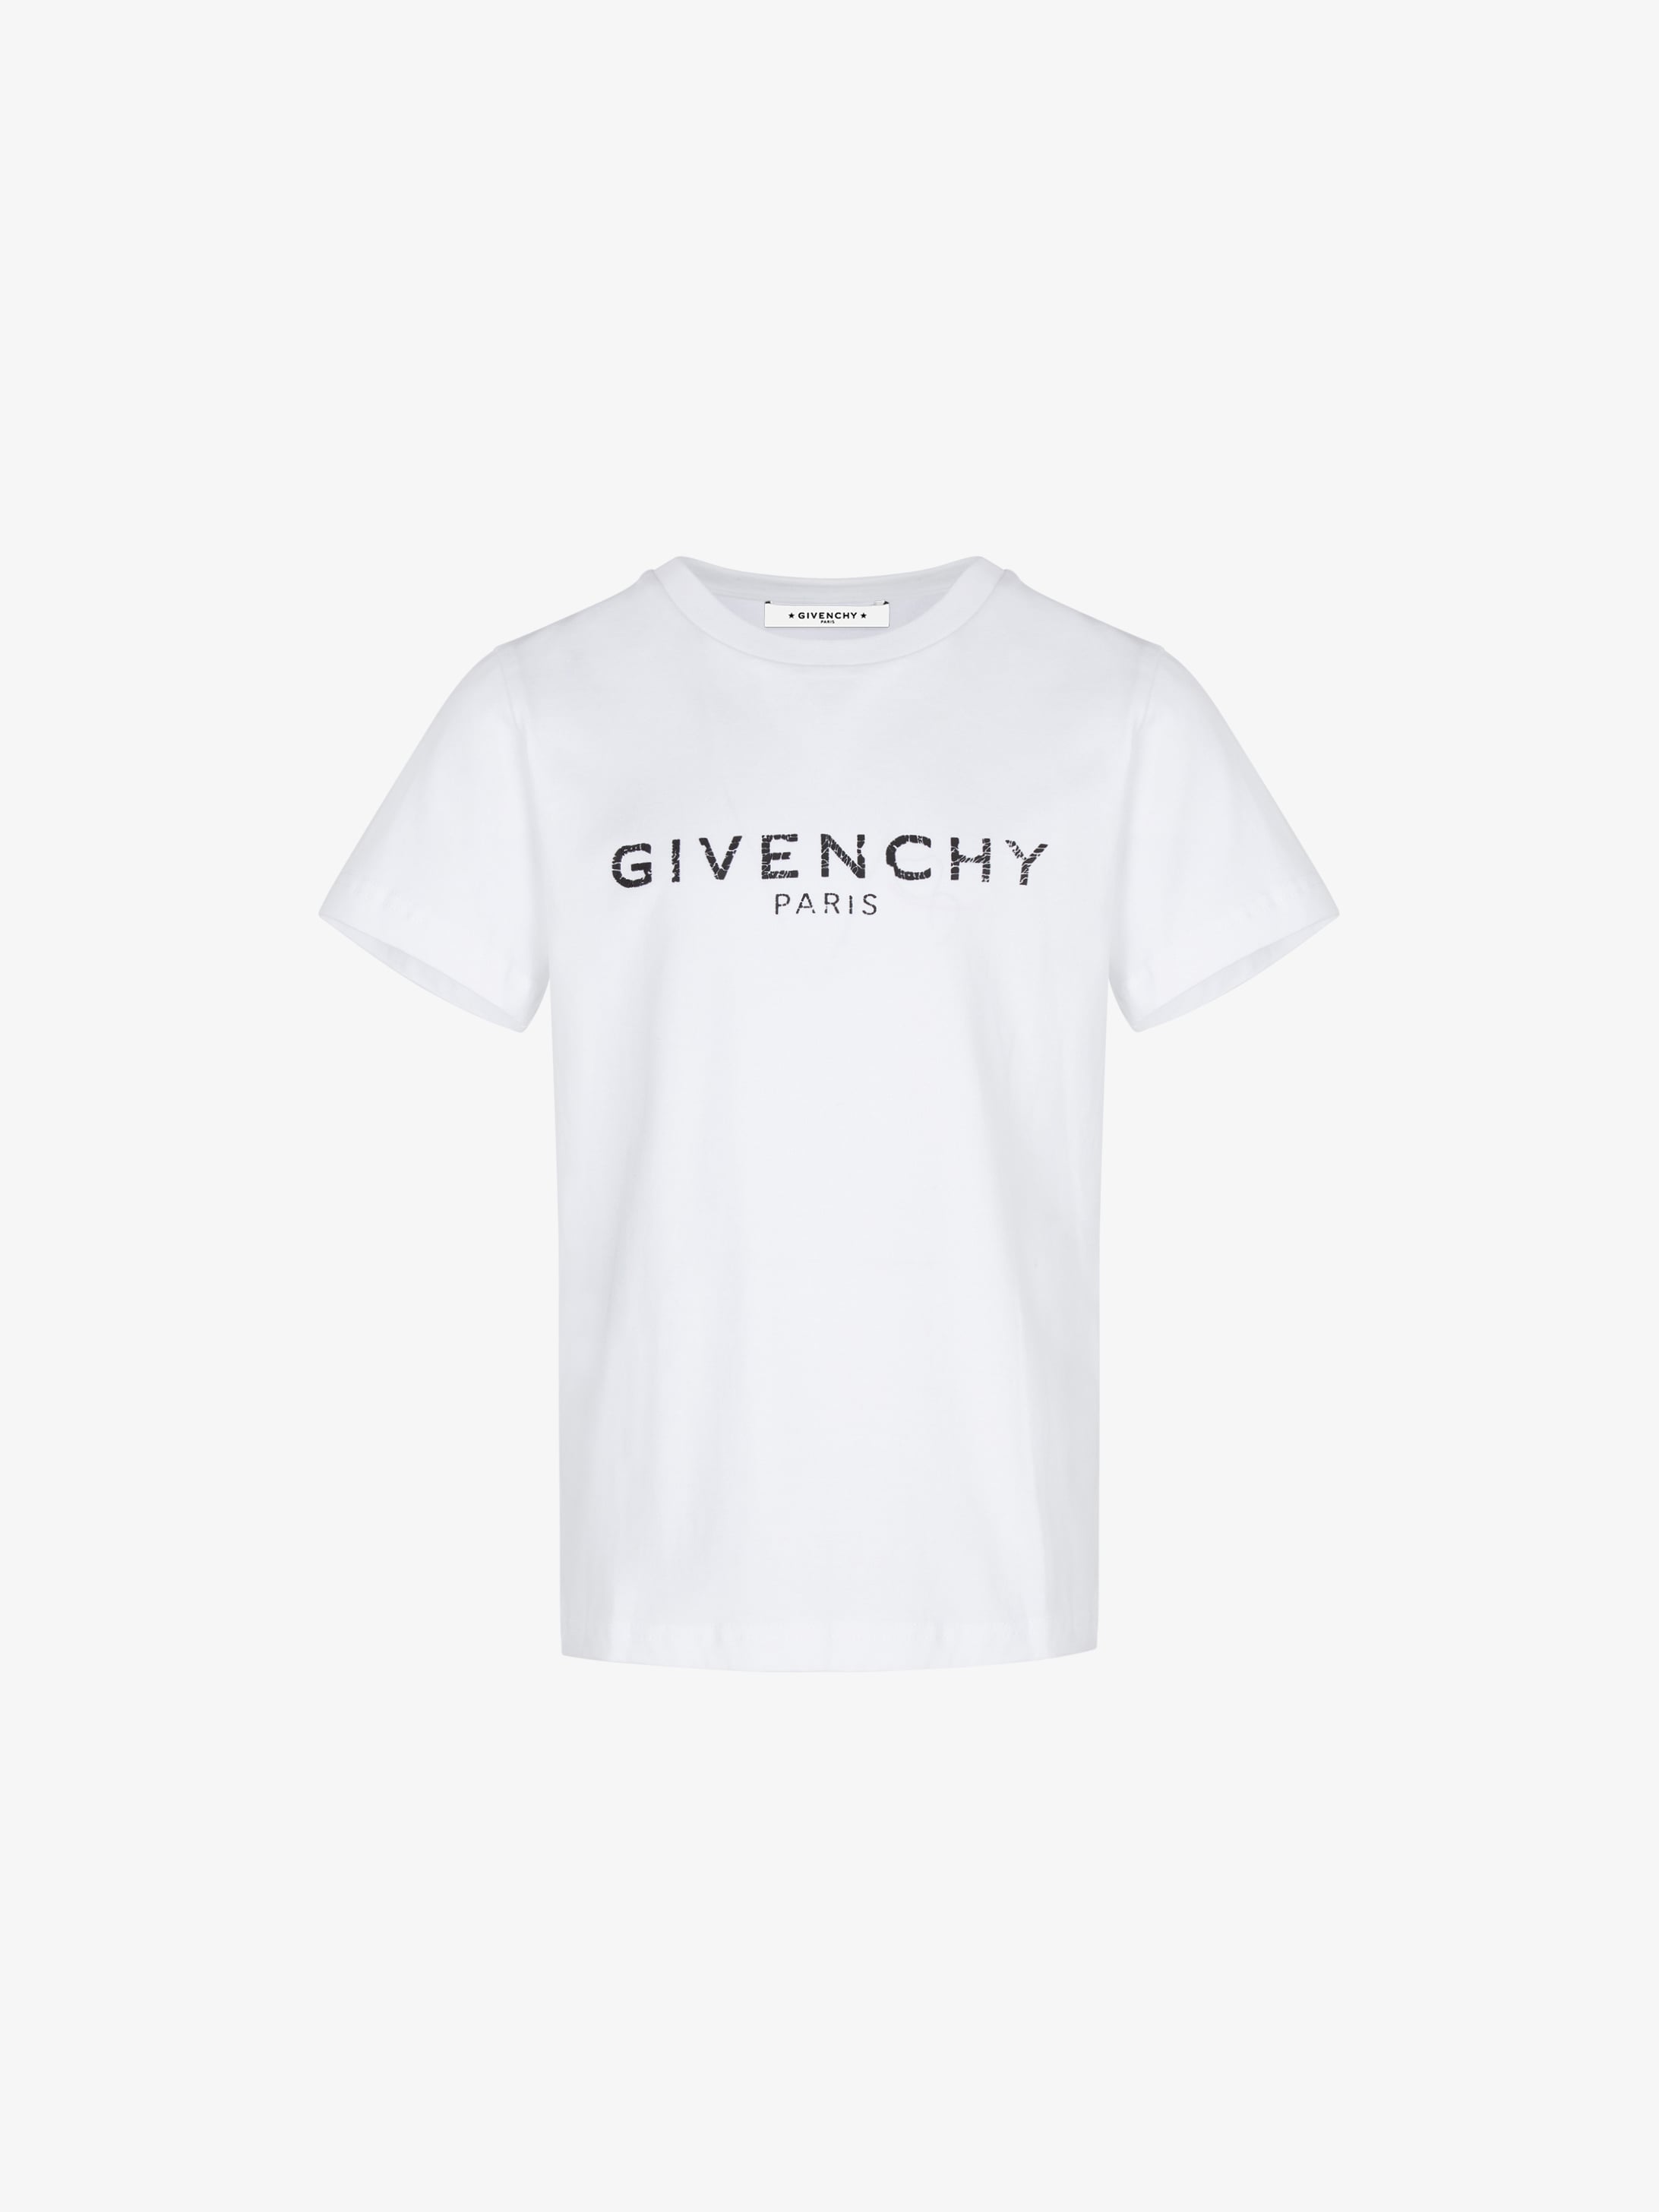 GIVENCHY printed t-shirt | GIVENCHY Paris